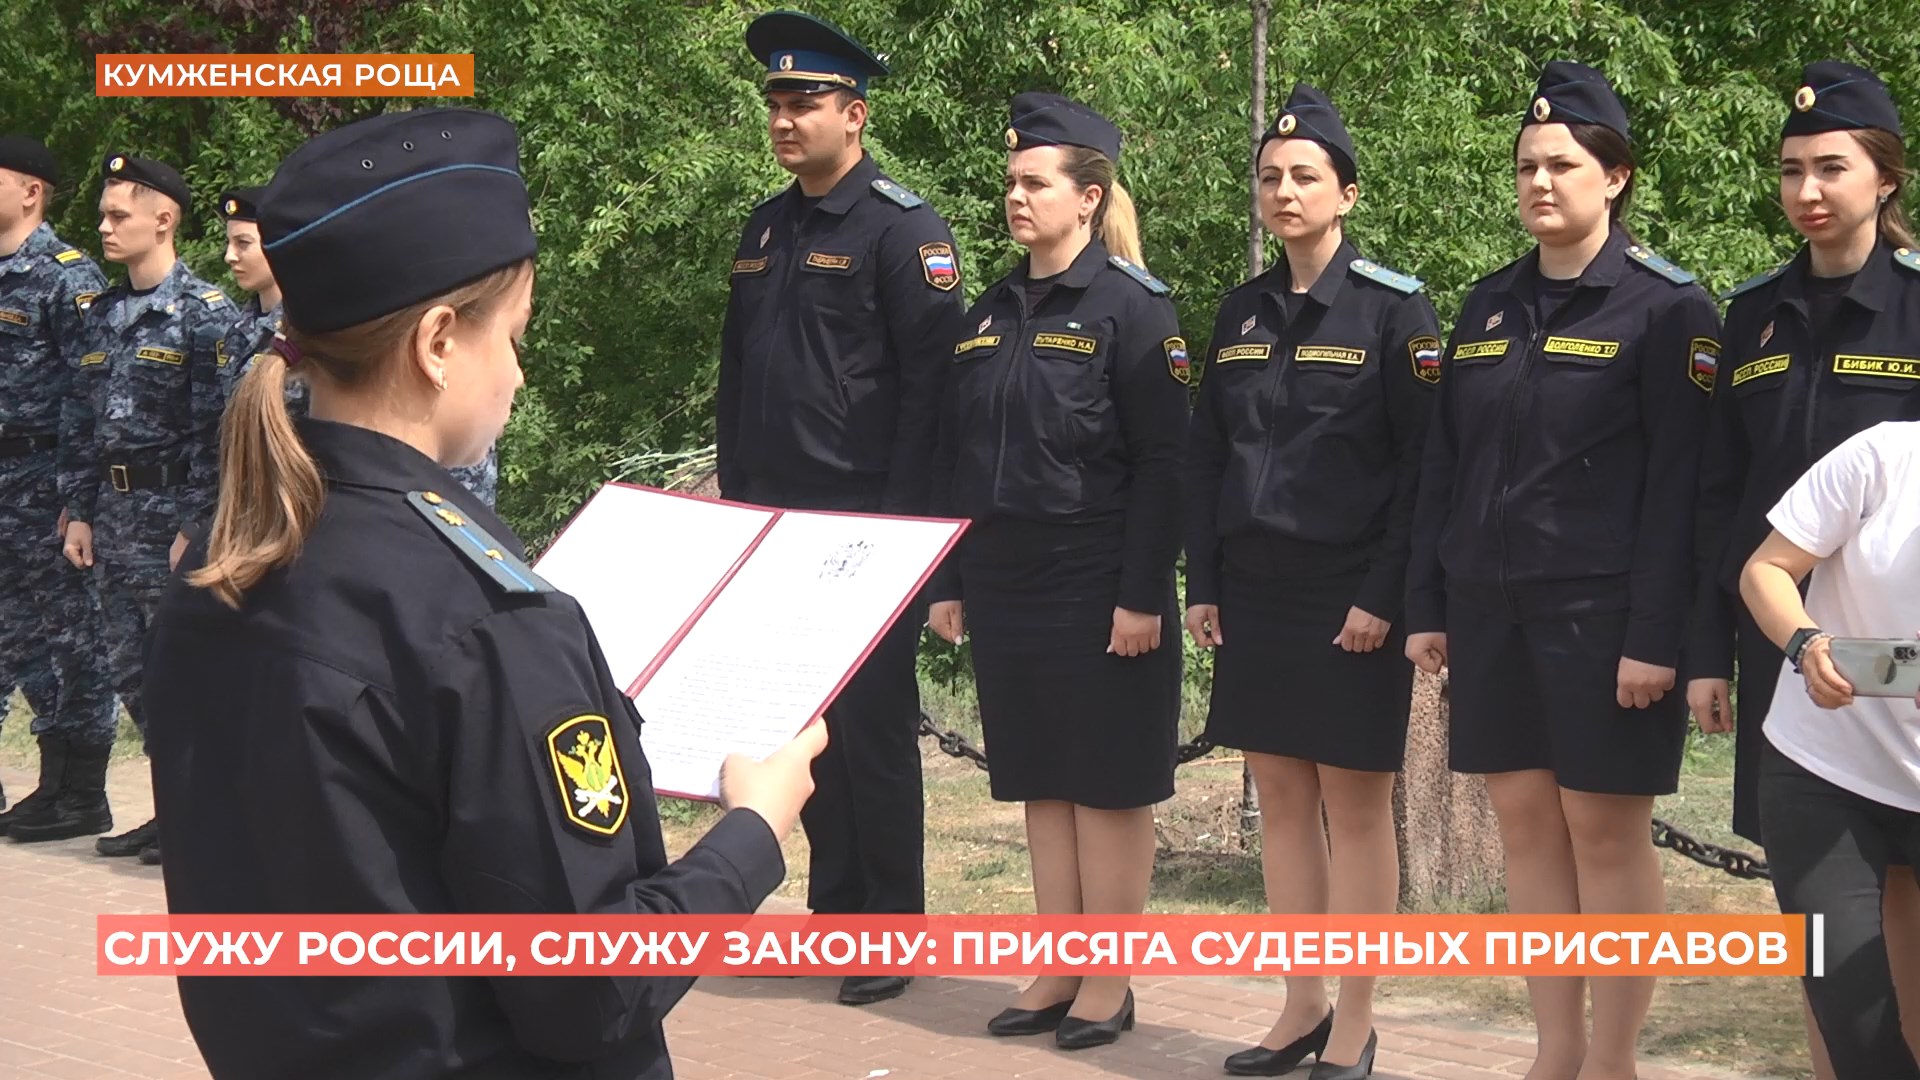 26 судебных приставов торжественно приняли присягу у памятника «Штурм» в Кумженской роще